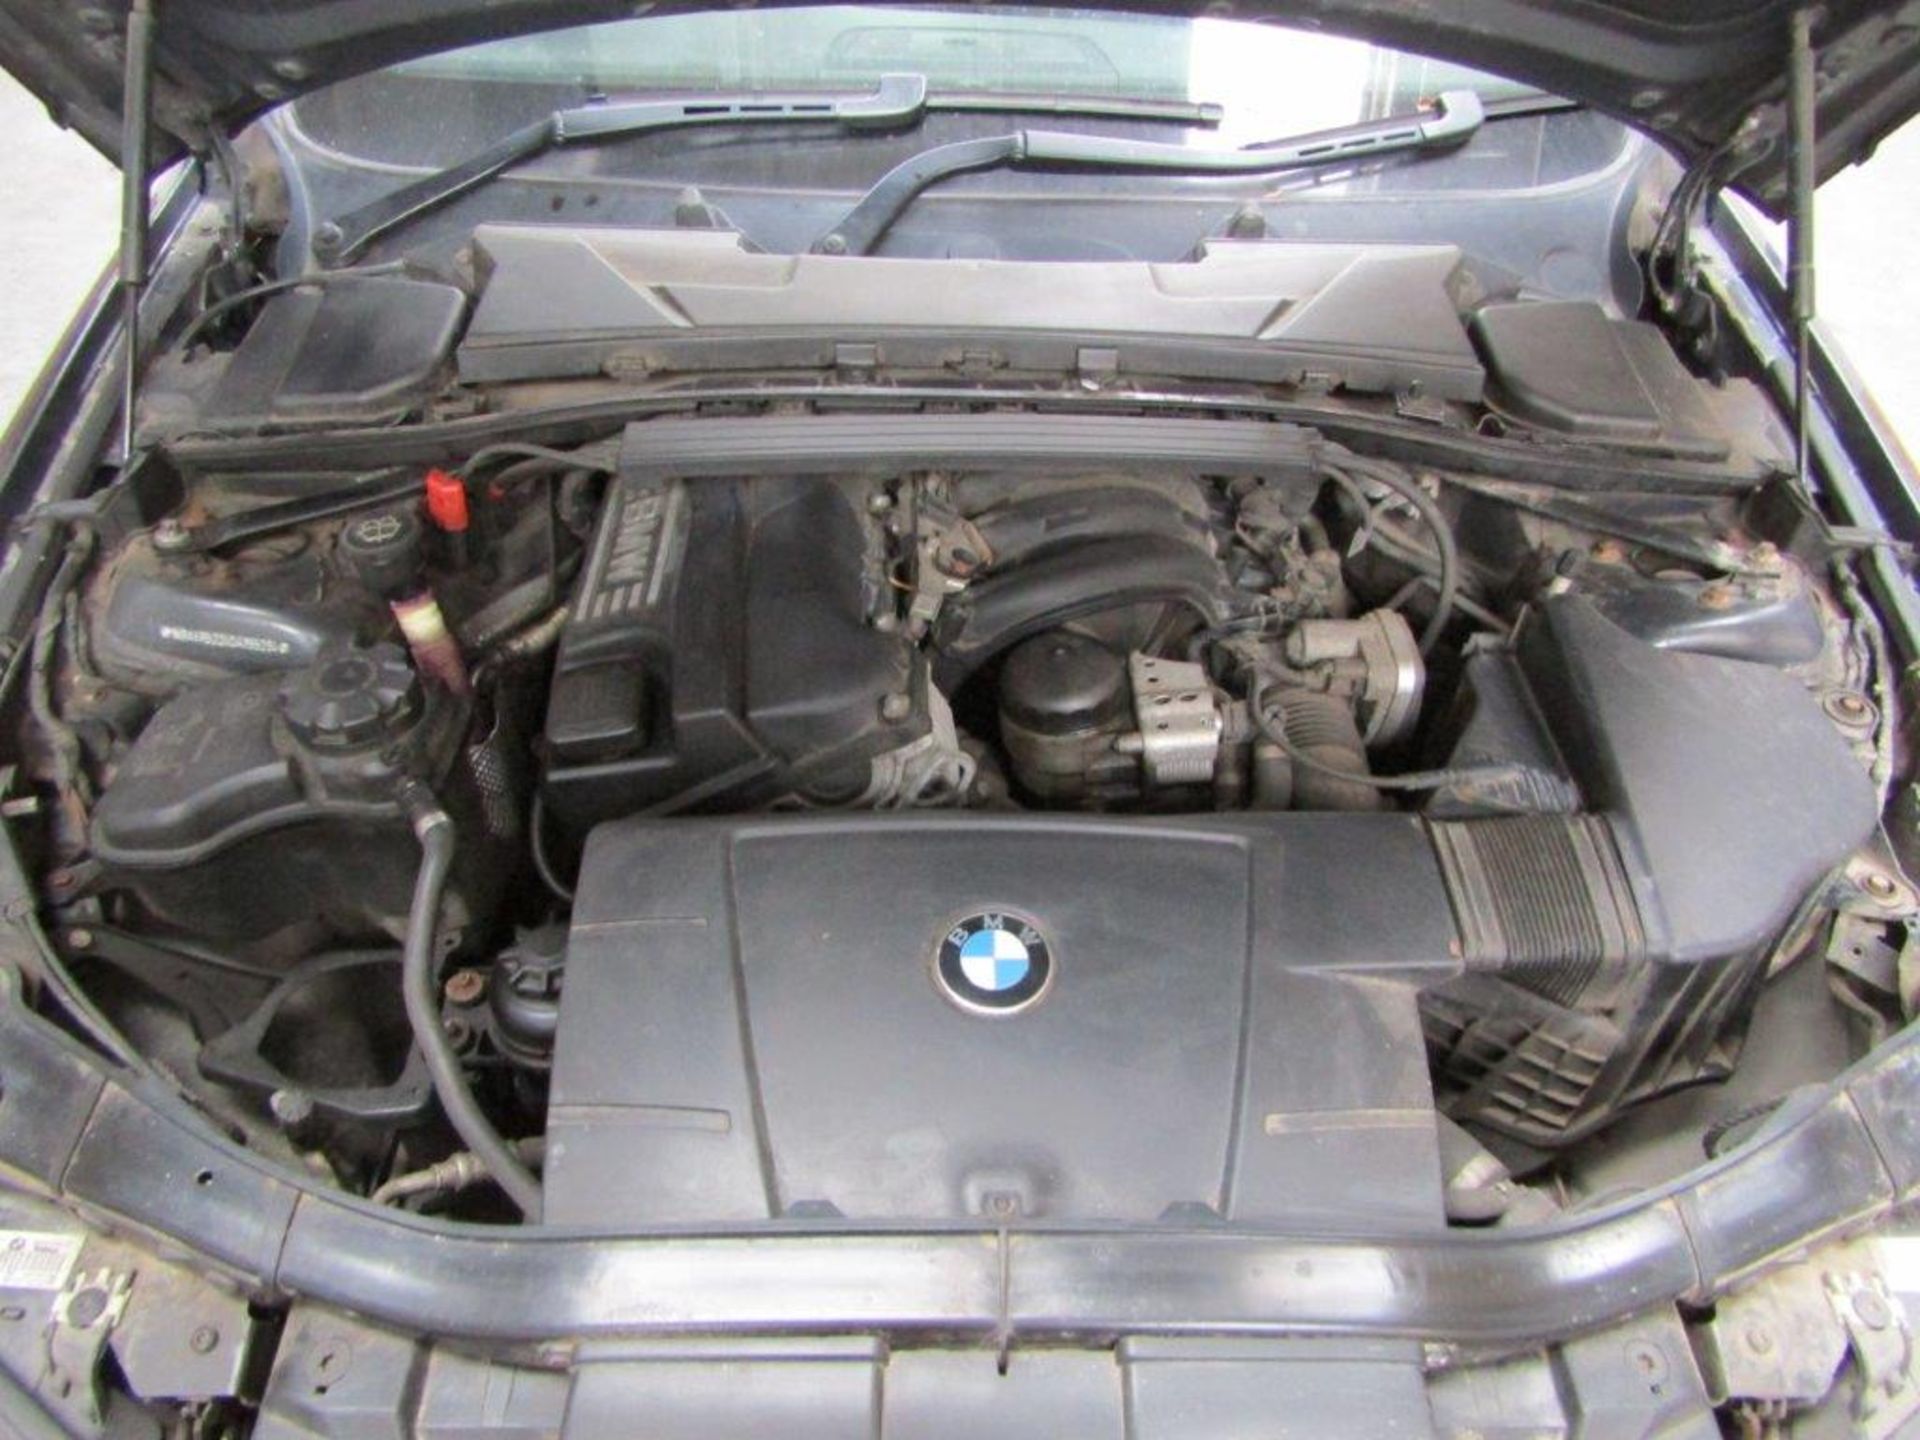 56 06 BMW 318I SE Touring - Image 8 of 15